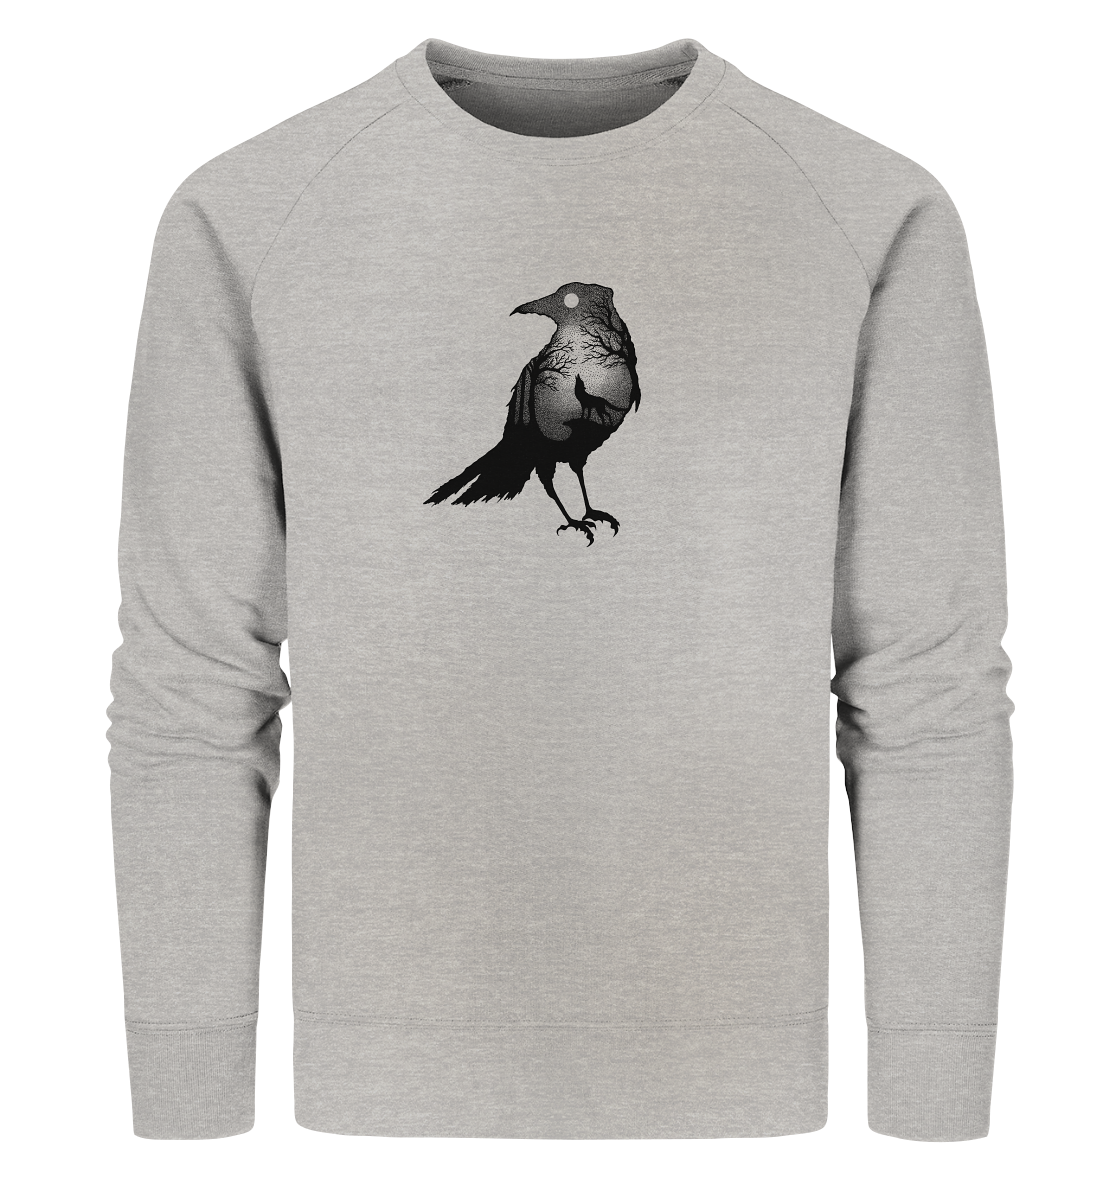 front-organic-sweatshirt-c2c1c0-1116x-4.png